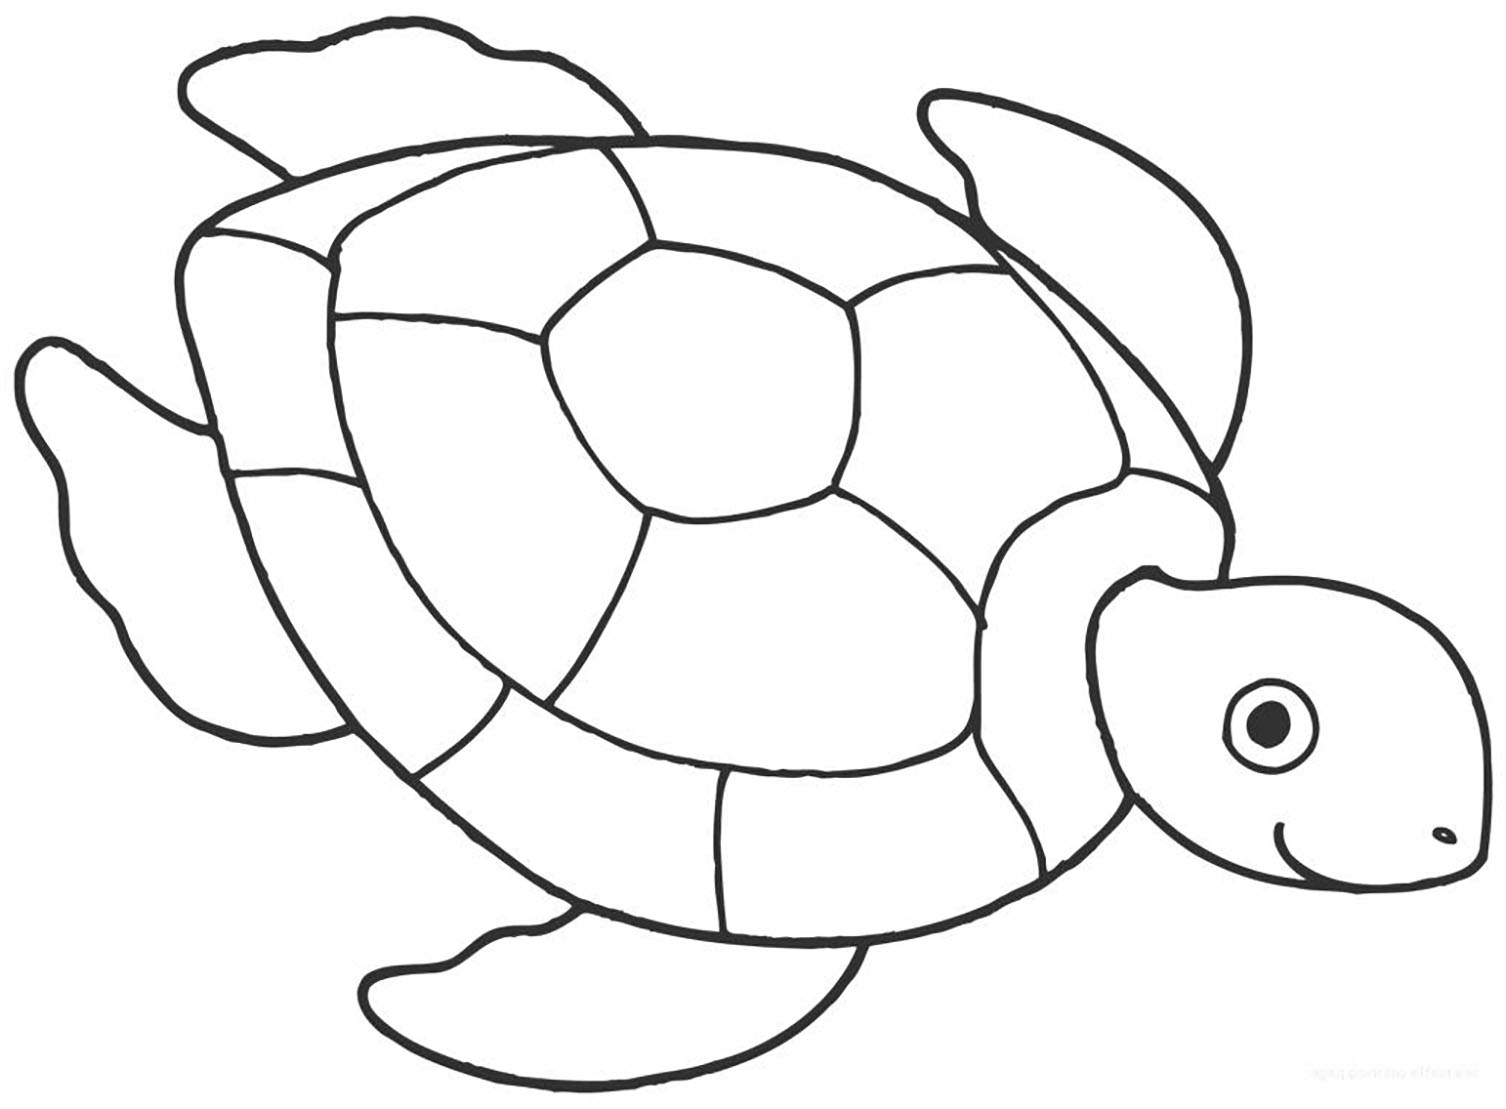 Páginas para colorear de tortugas para niños - Tortuga - Just Color Niños : Dibujos  para colorear para niños